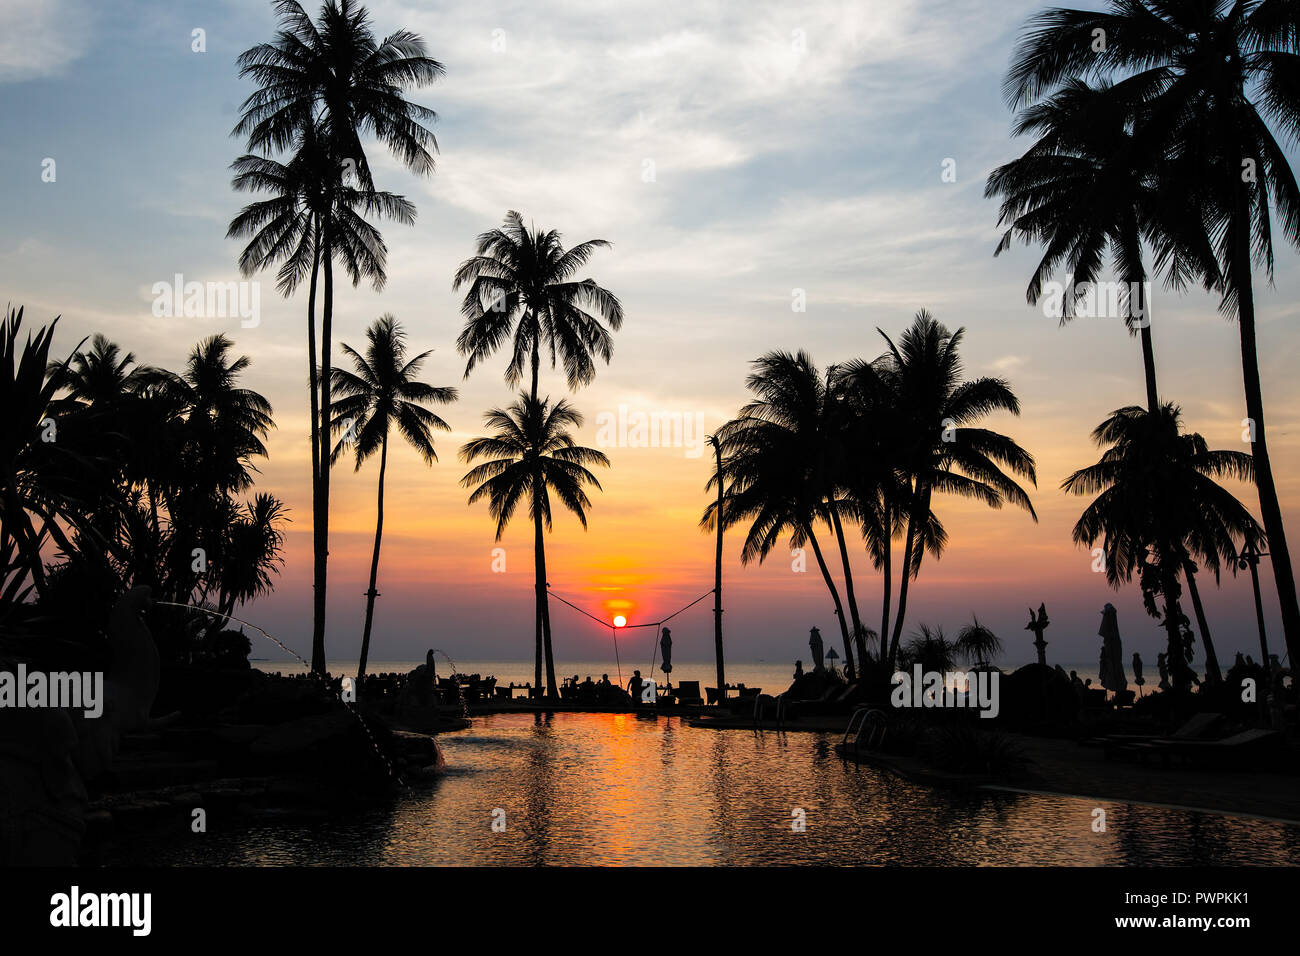 Belle plage tropicale avec palmiers silhouettes au crépuscule. Banque D'Images